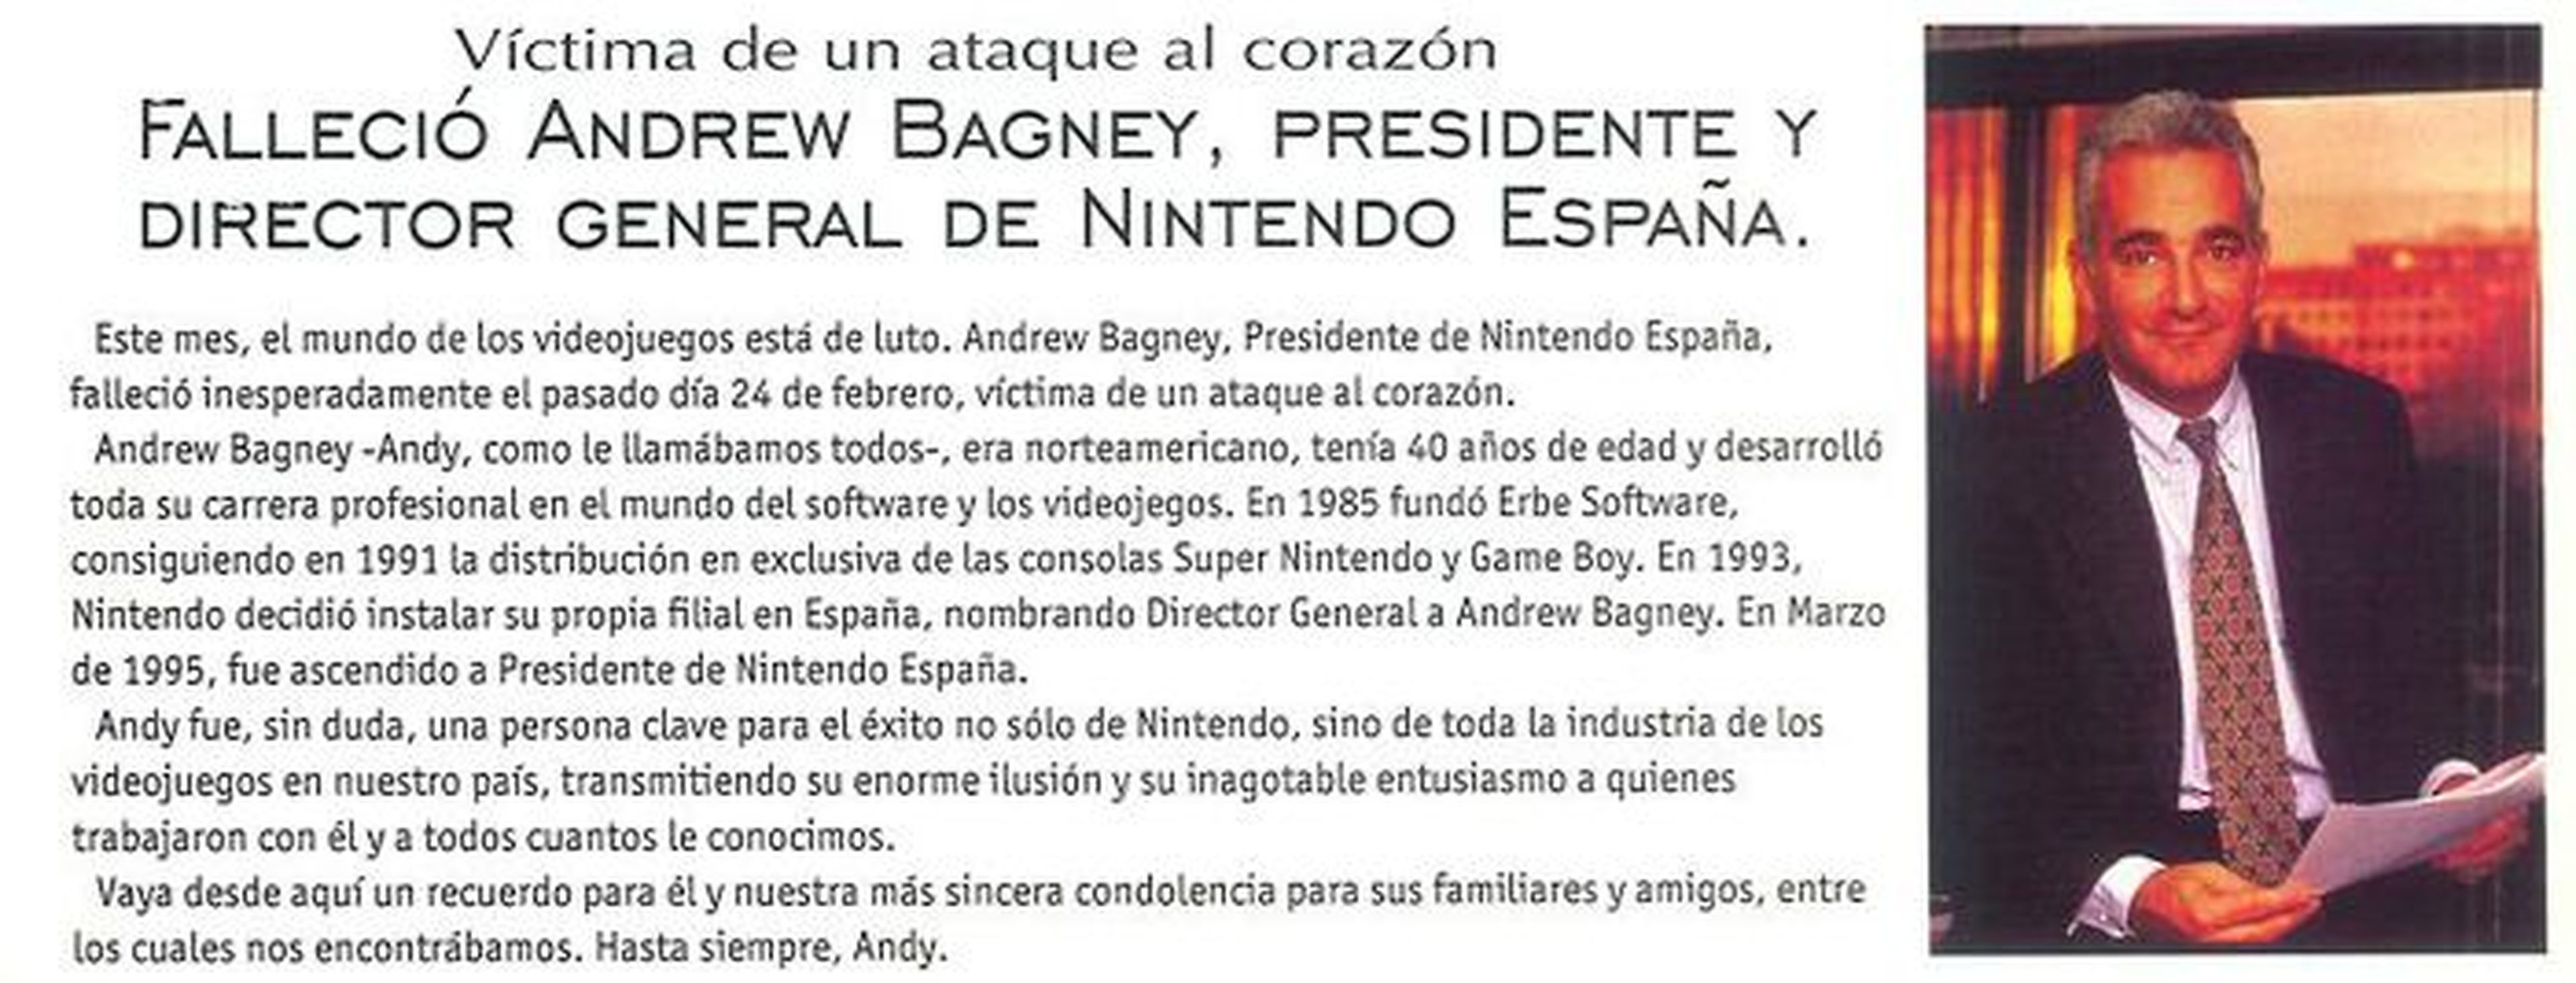 125 años de Nintendo... y 21 de Nintendo España